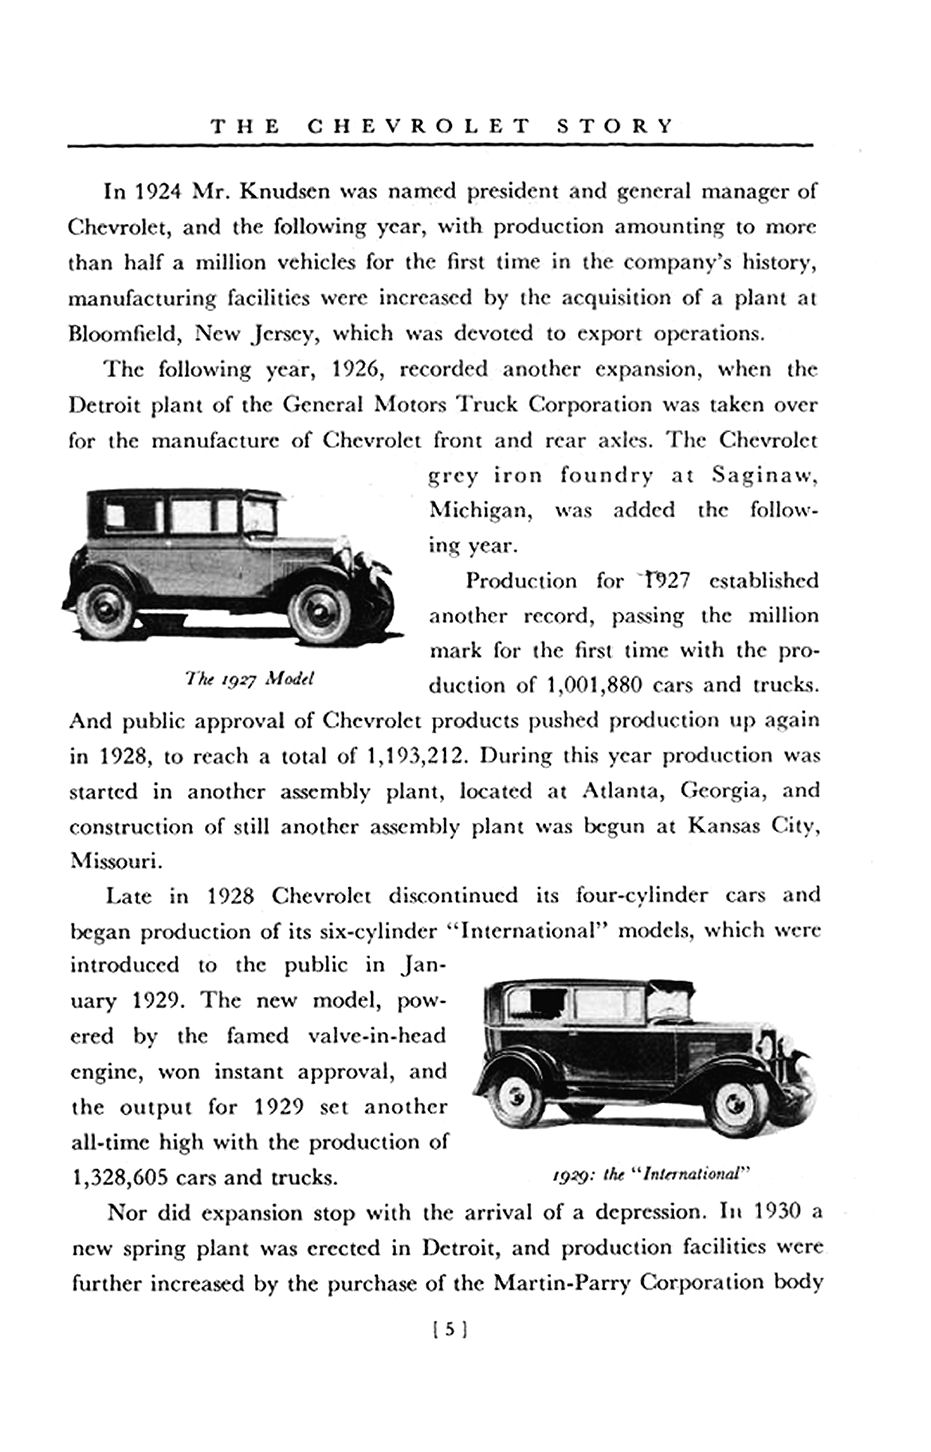 1951_Chevrolet_Story-05